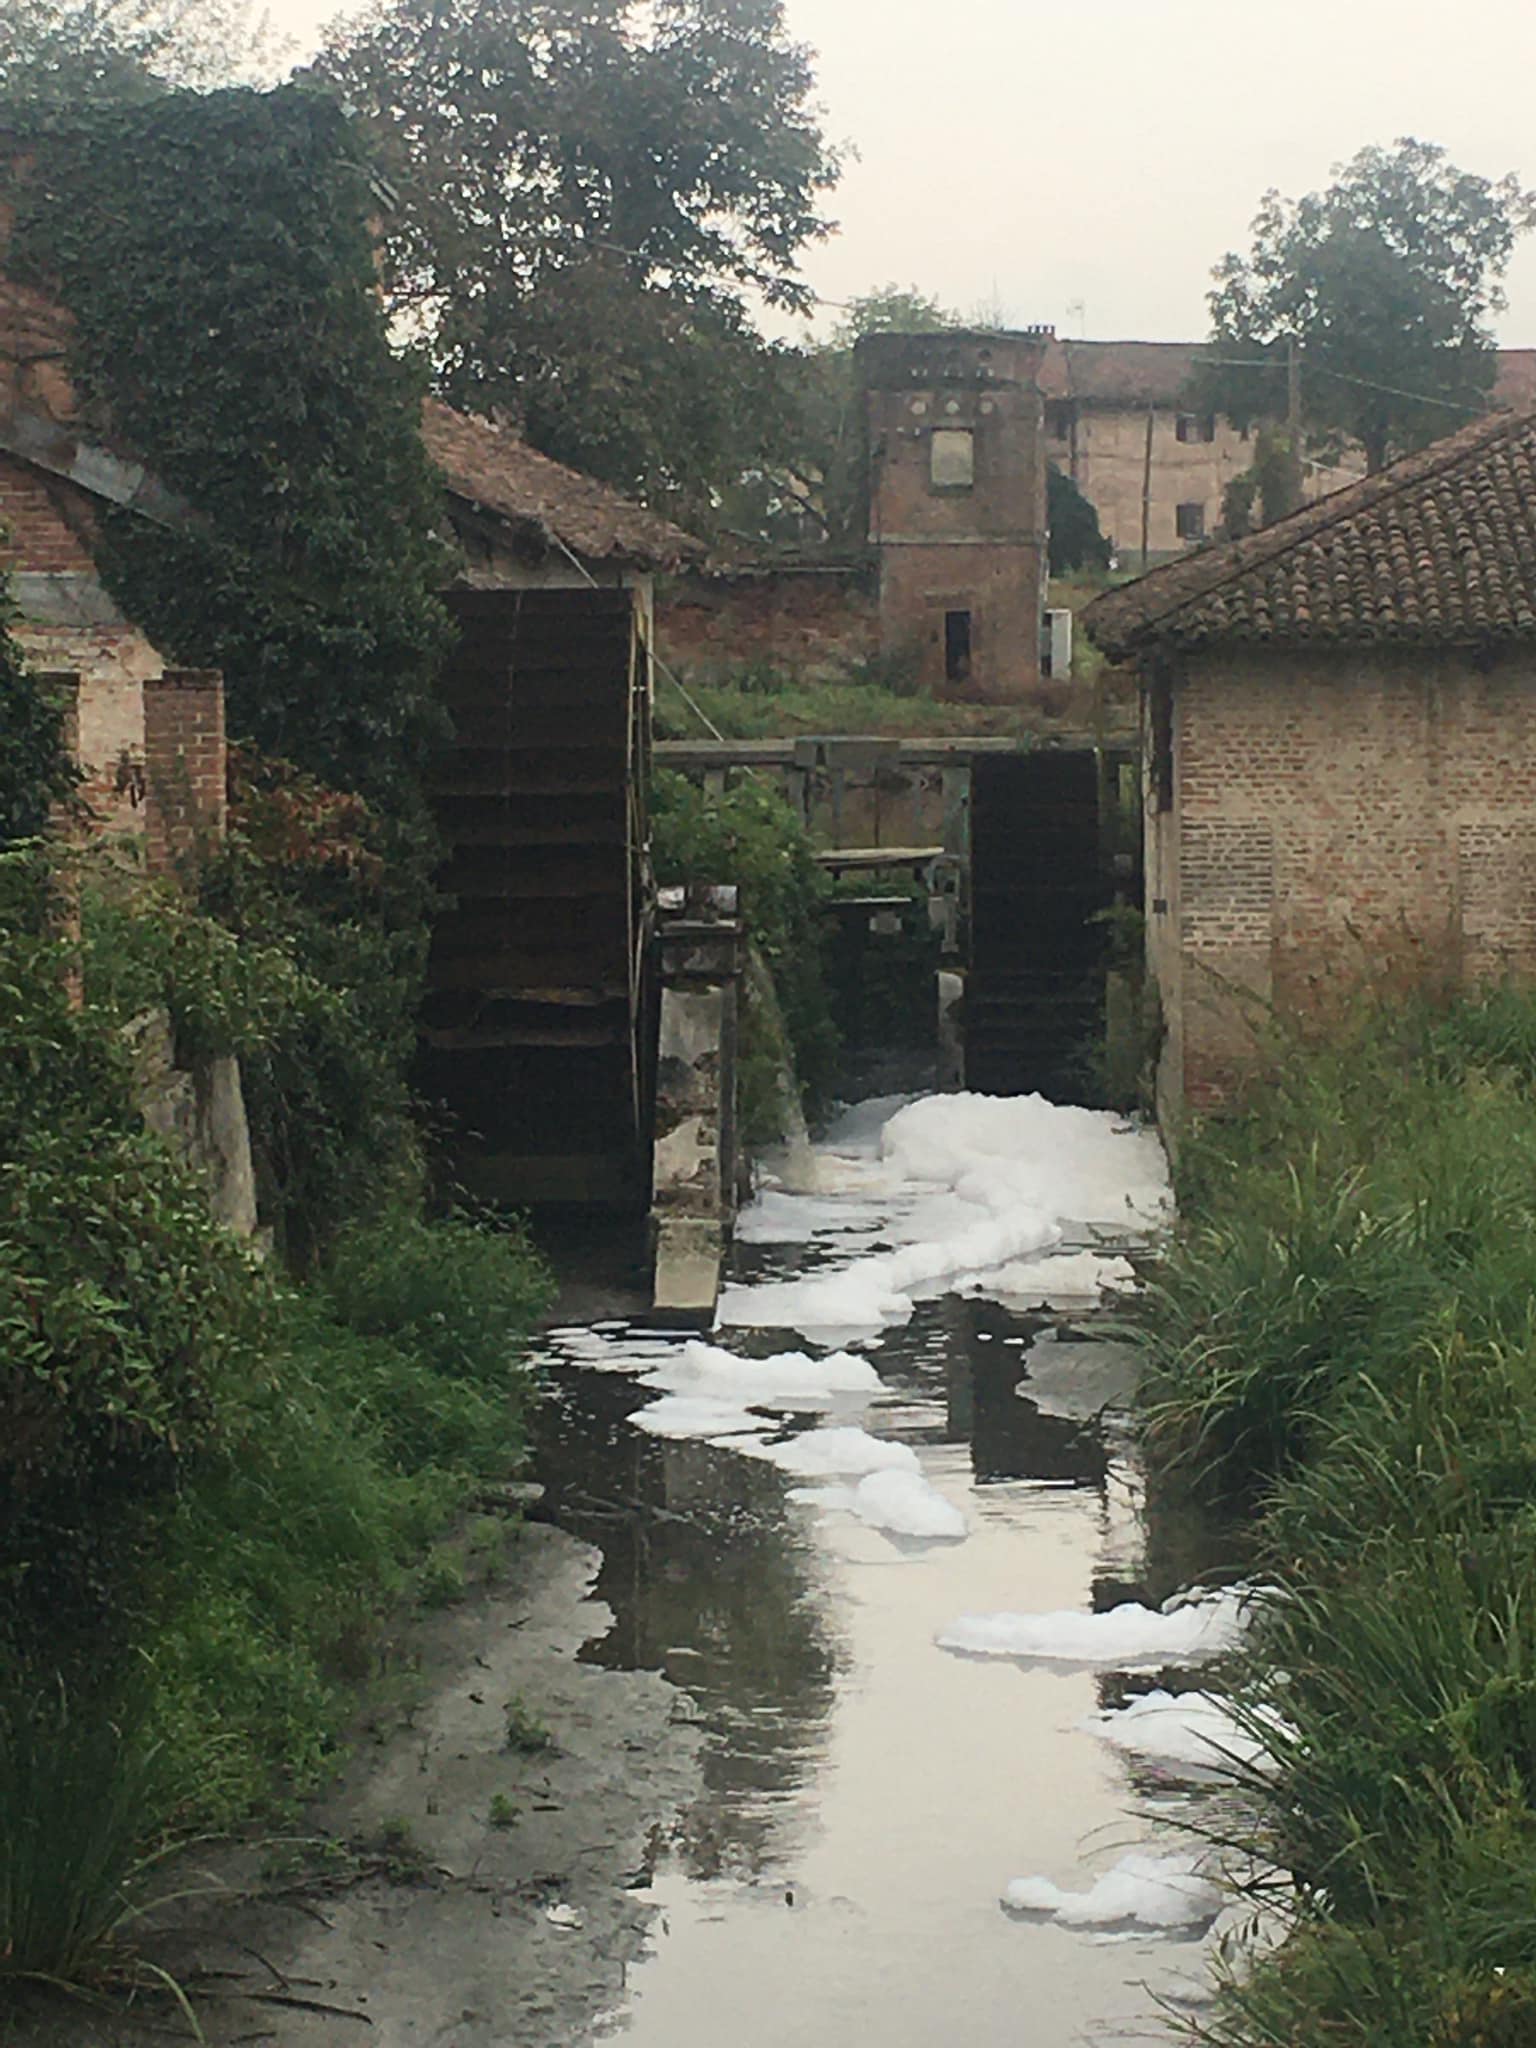 VILLASTELLONE – Schiuma nel canale di Borgo Cornalese: i residenti chiedono verifiche